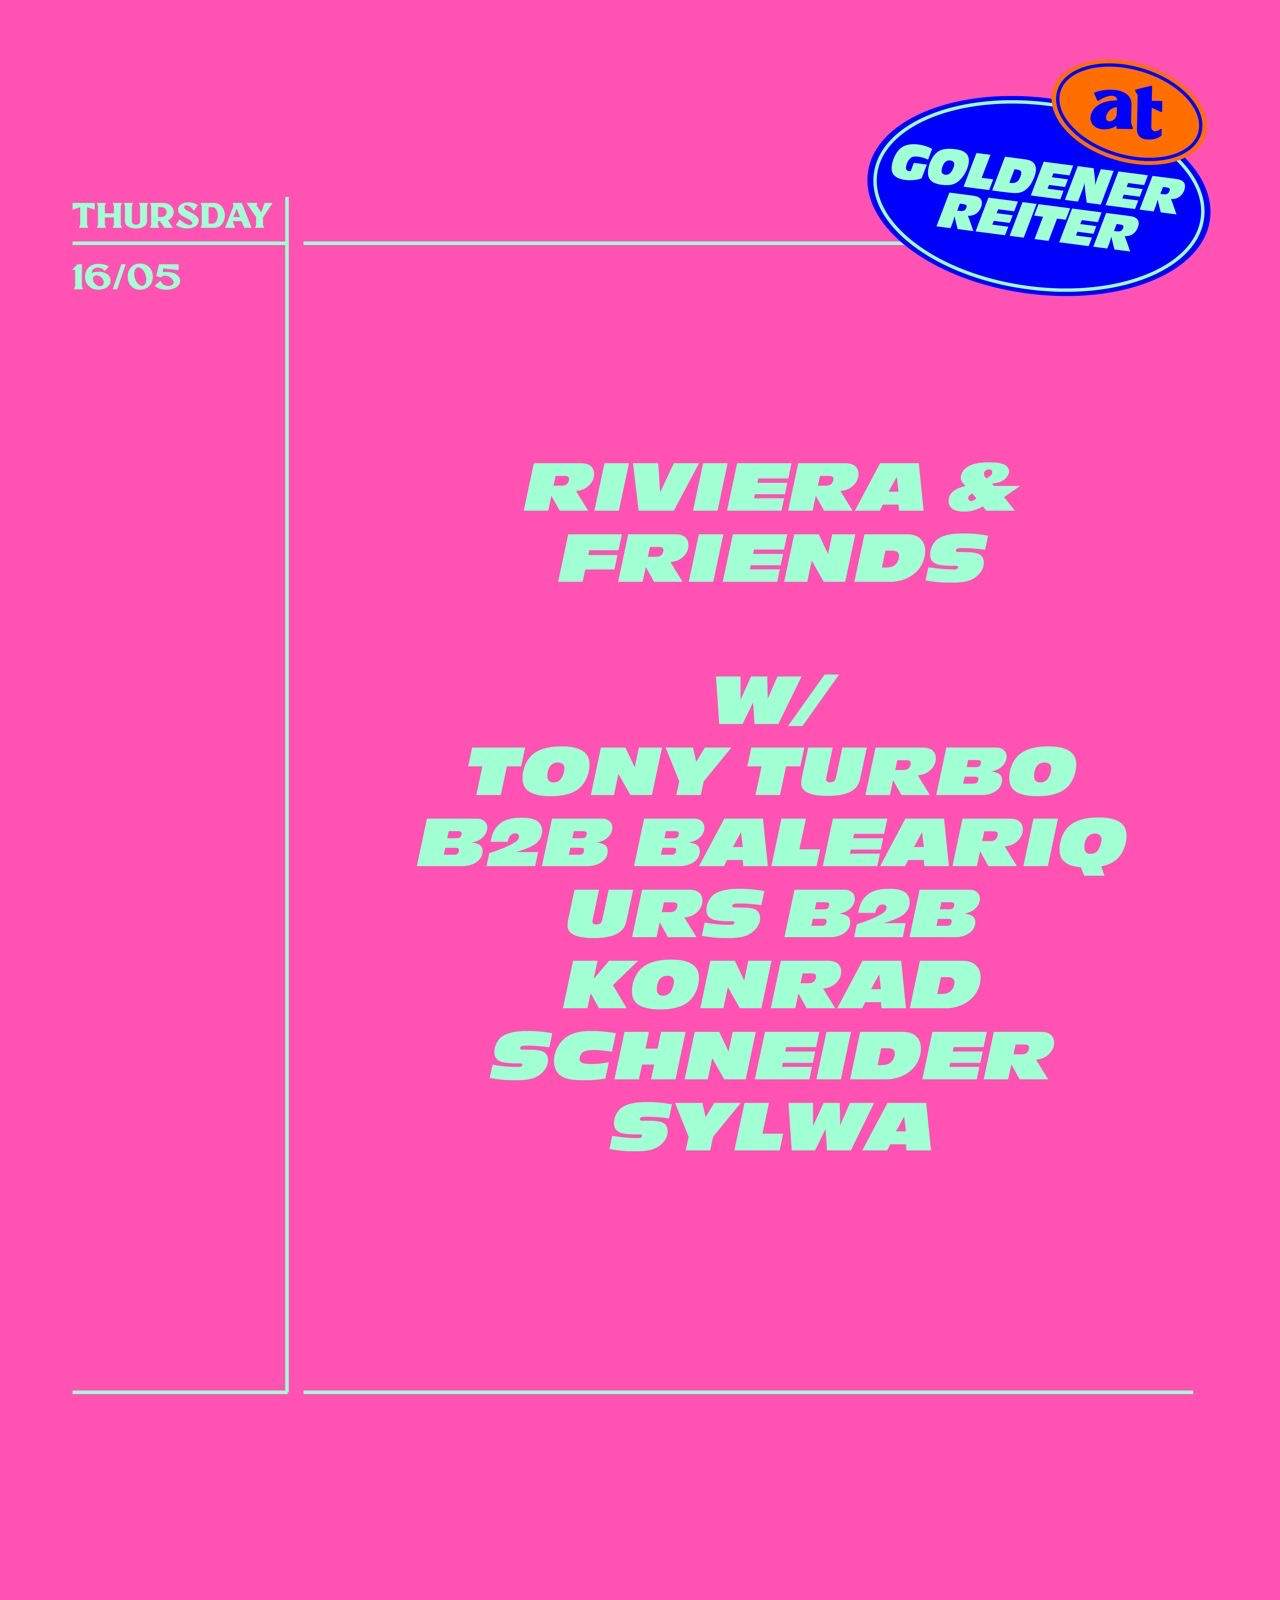 Riviera & Friends with Tony Turbo b2b baleariq, URS b2b Konrad Schneider, Sylwa - Página frontal